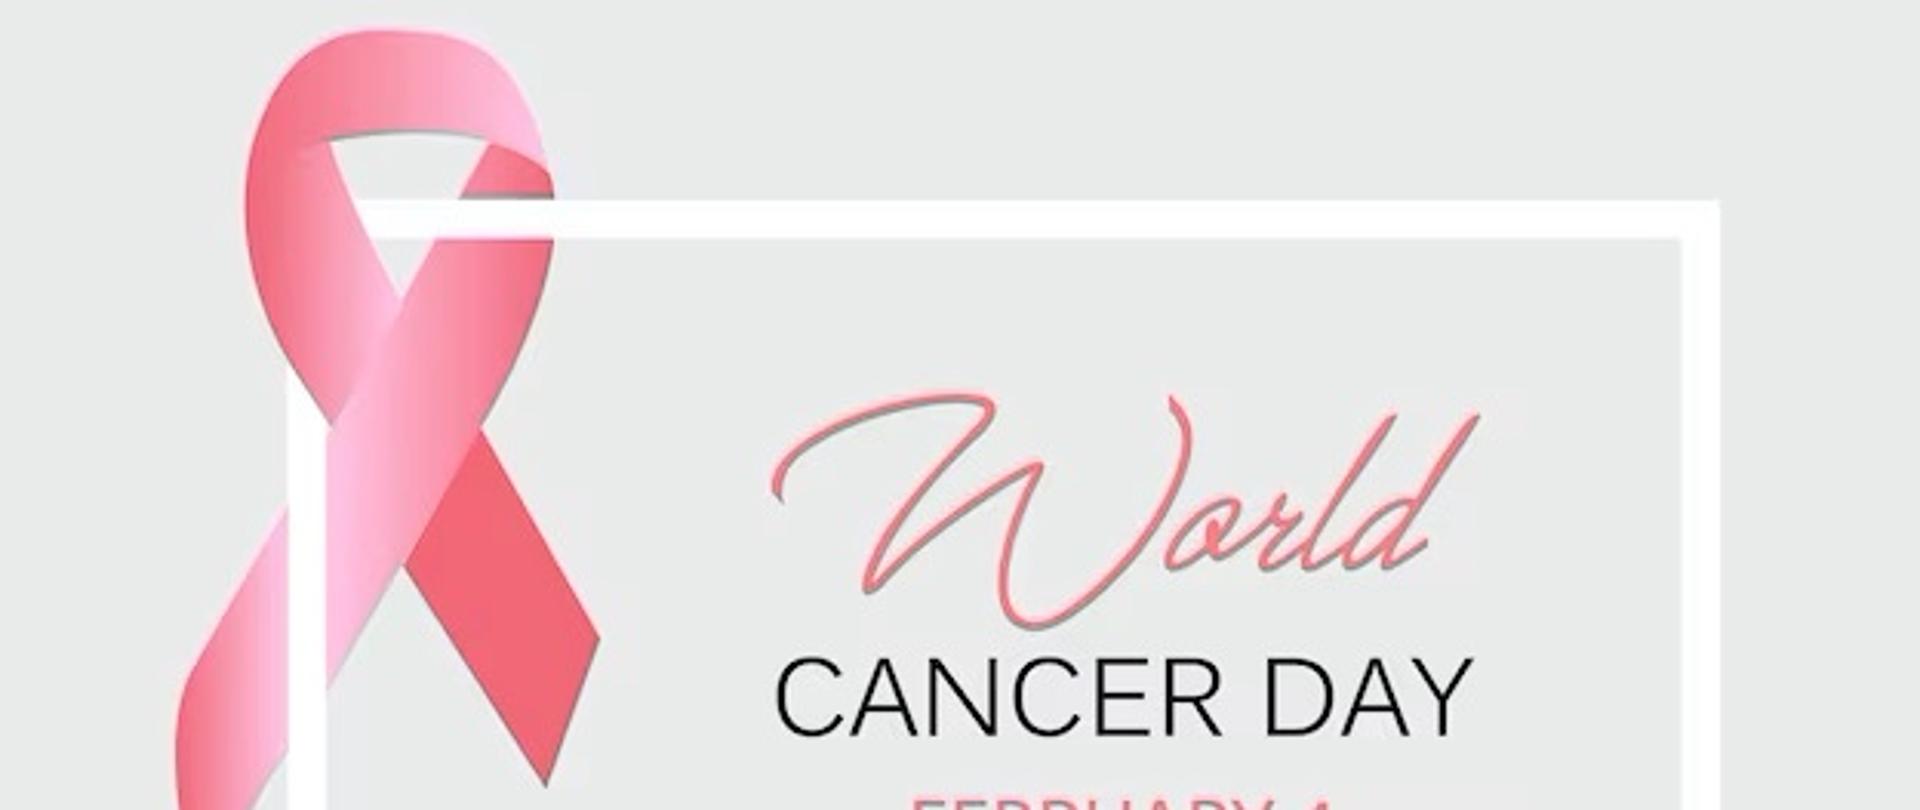 swiatowy dzien walki z rakiem